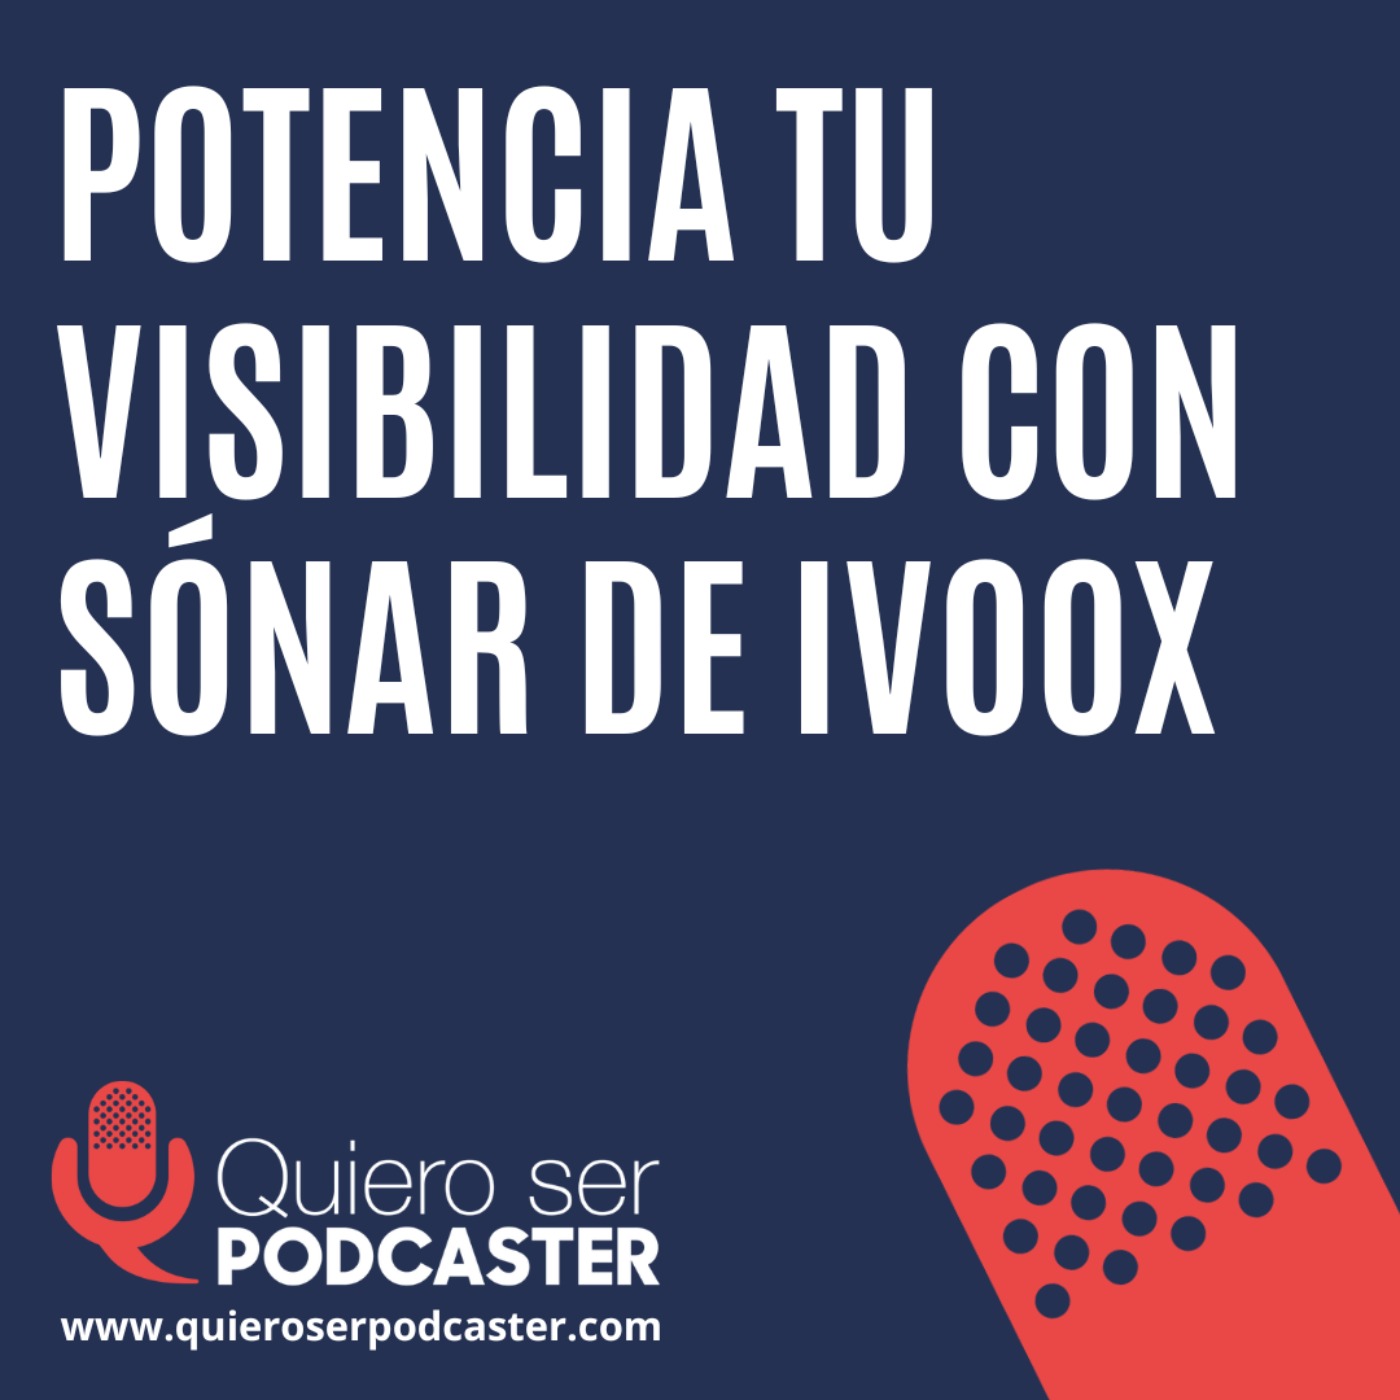 Sónar, acción trimestral de @ivoox para potenciar la visibilidad de podcasts